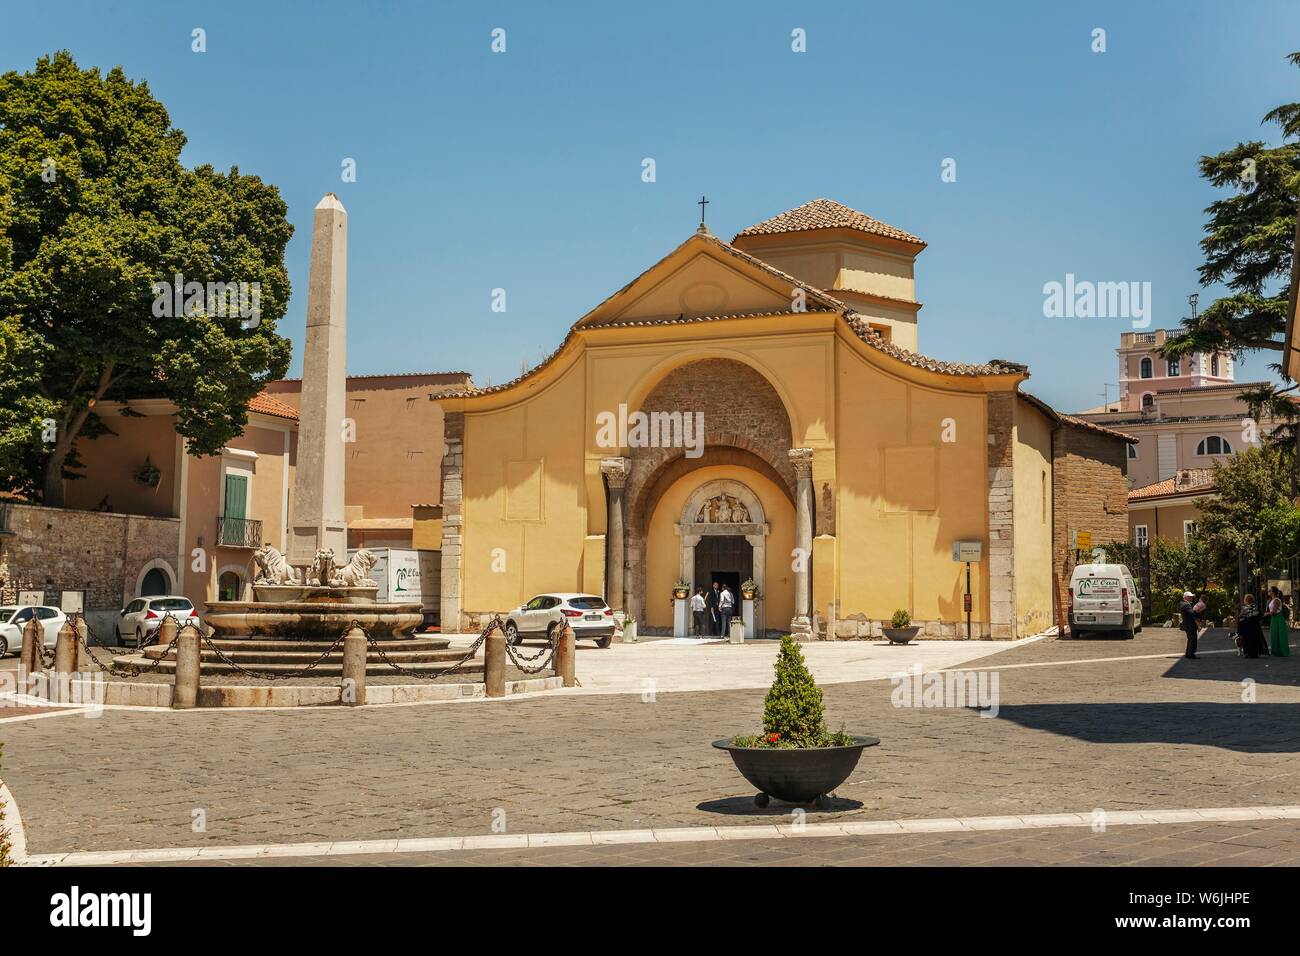 Église de Santa Sofia Bénévent, Musée archéologique, candidat officiel de l'Unesco, l'Italie Campanie Banque D'Images